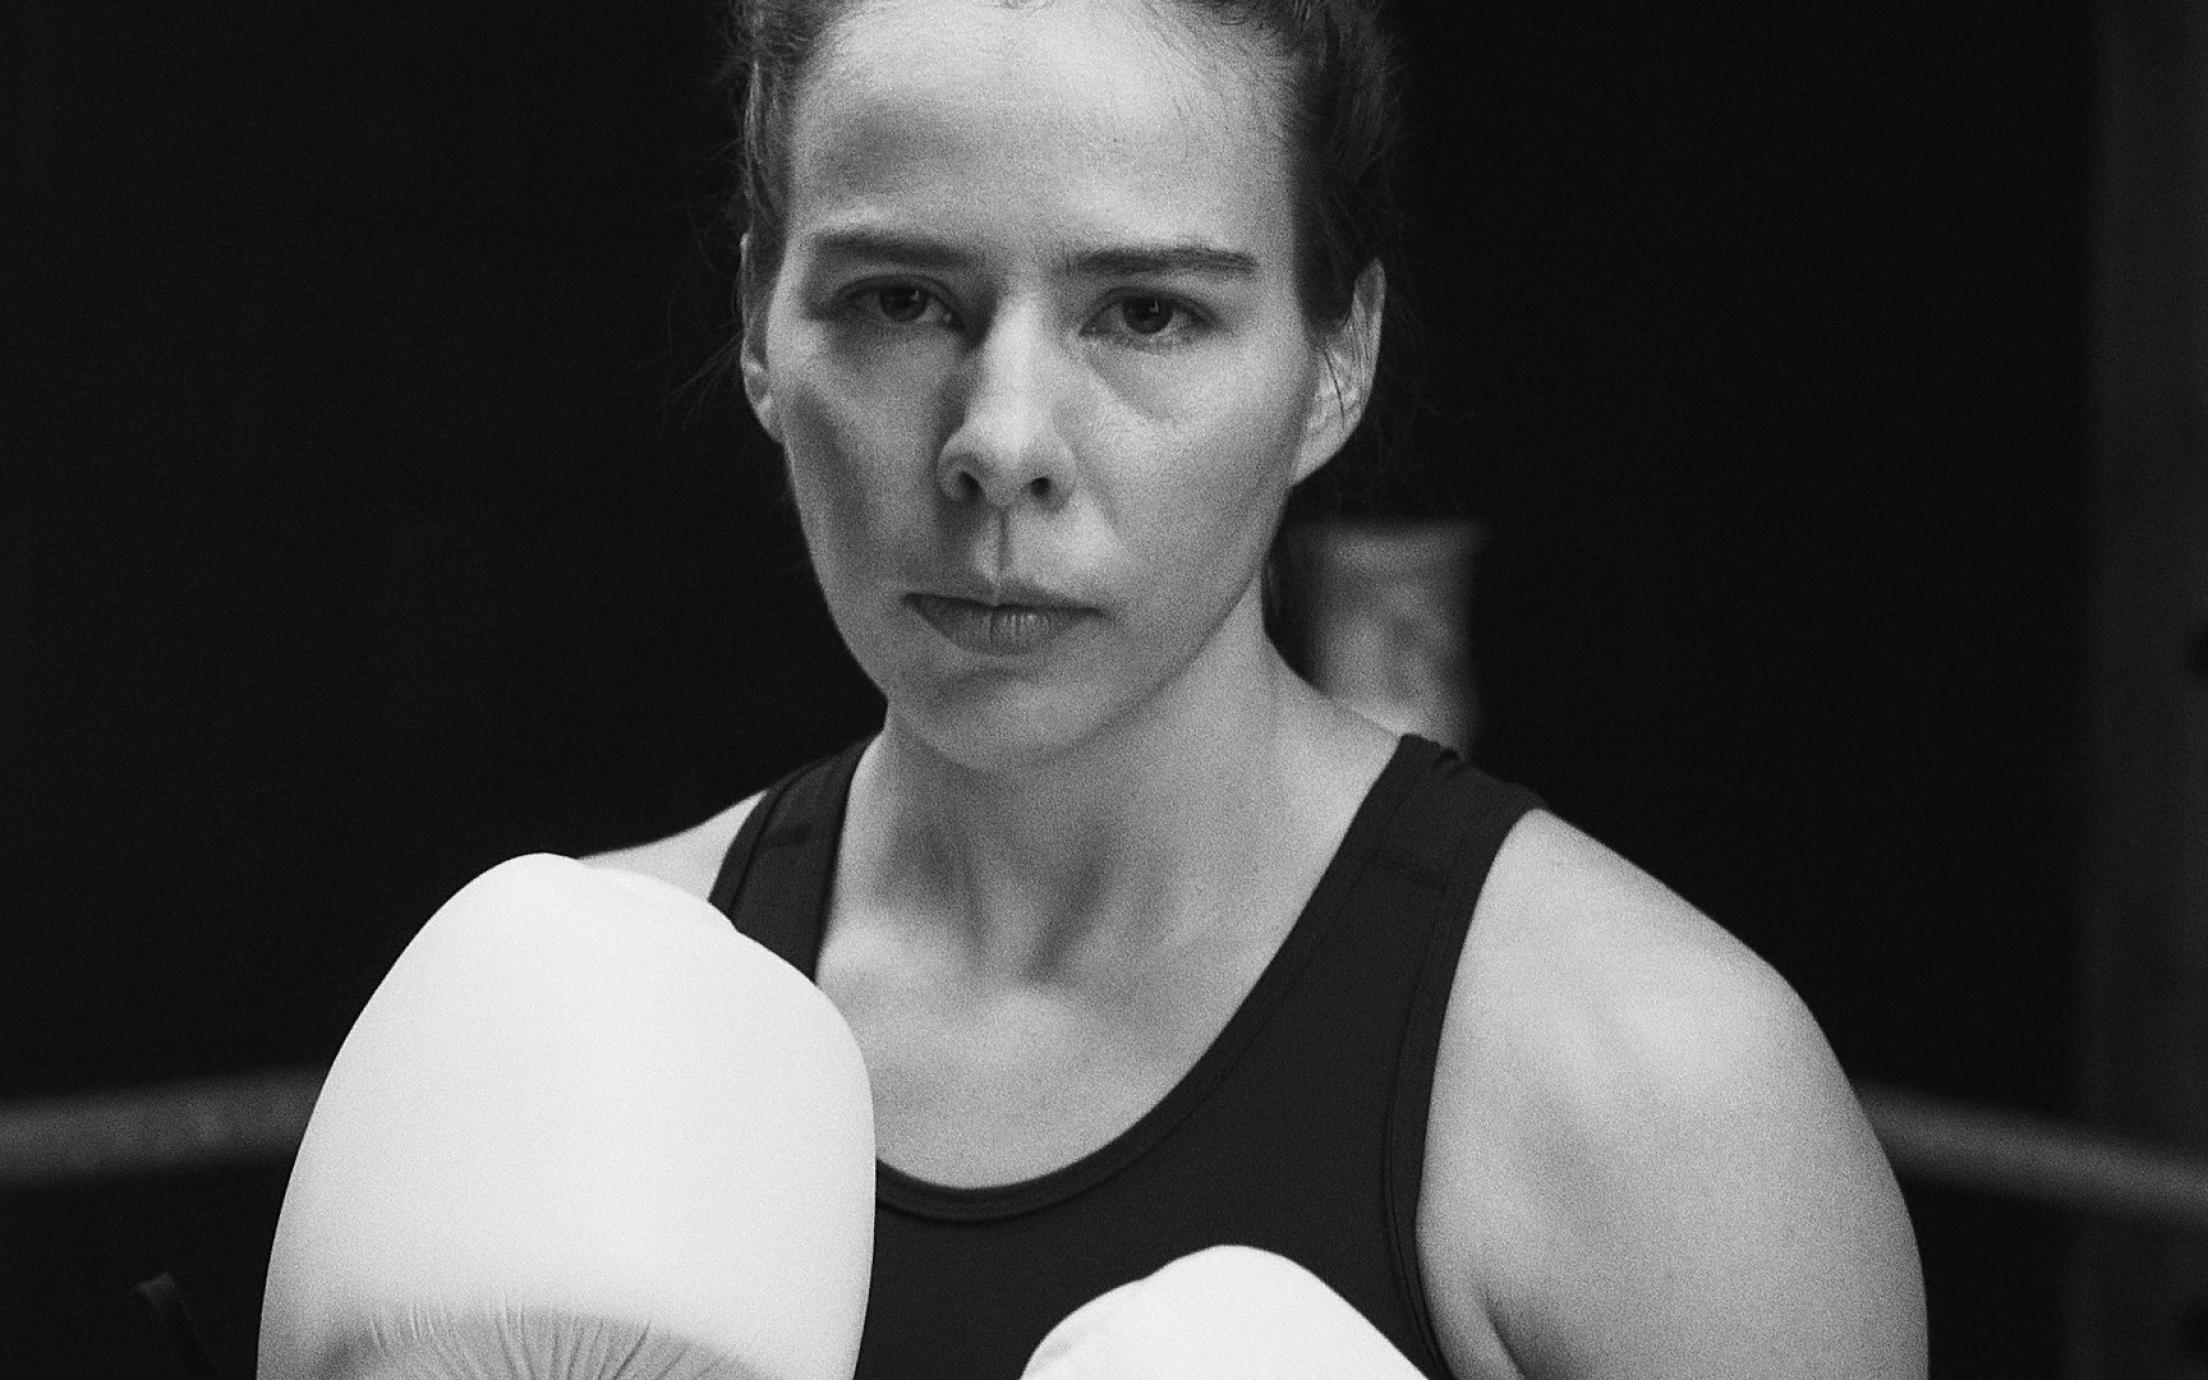 Ivy Richardson wearing boxing gloves